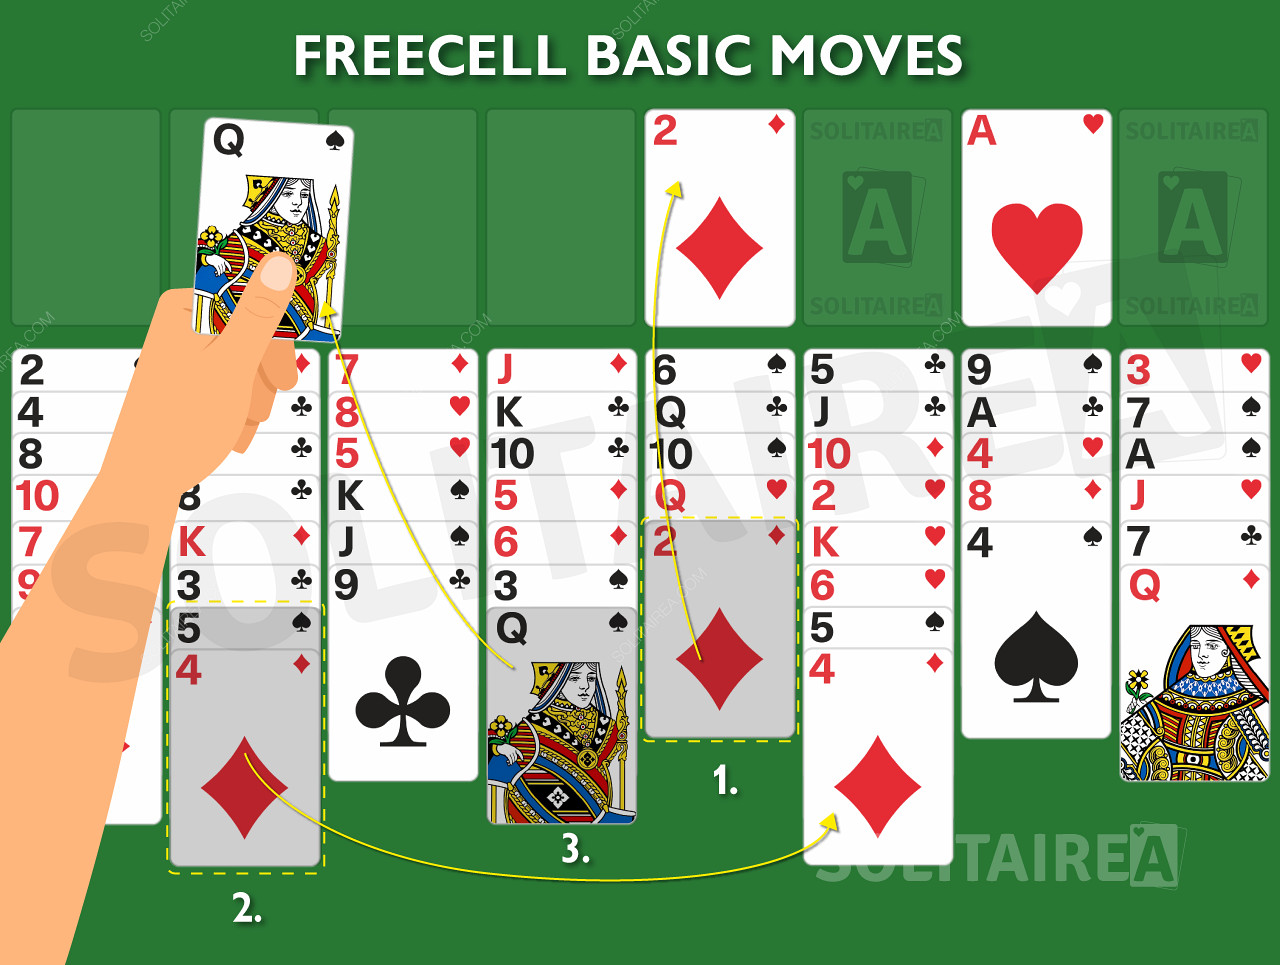 Obrázok z hry zobrazujúci základné pravidlá v akcii